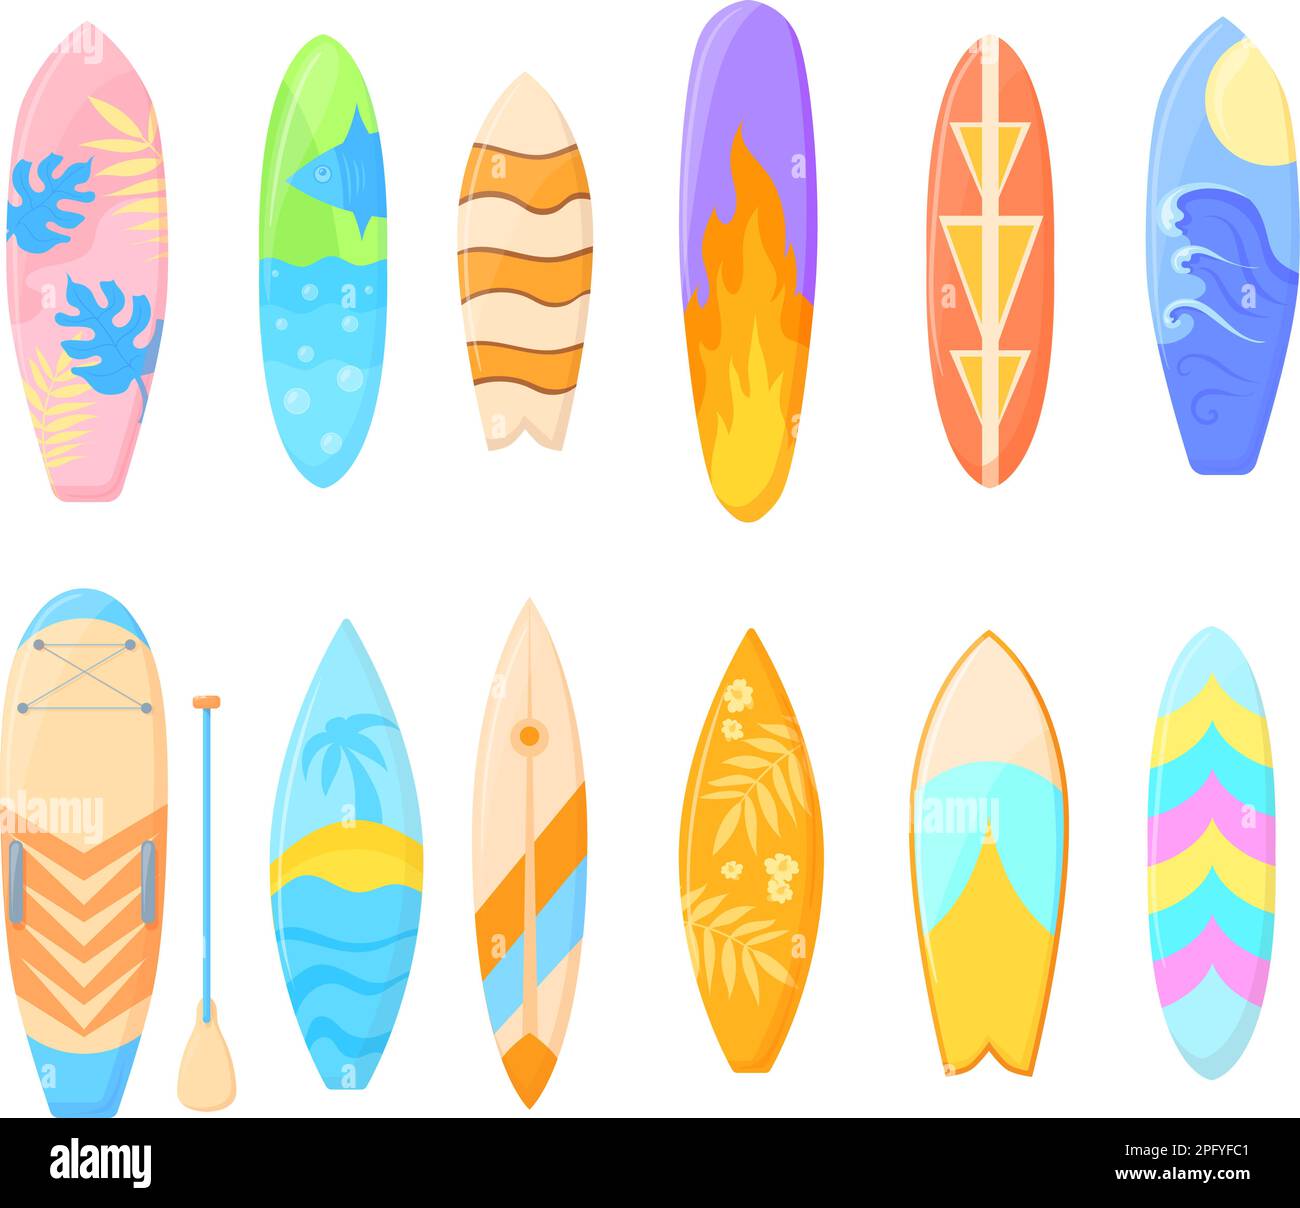 Bodyboarding hawaii Stock Vector Images - Alamy